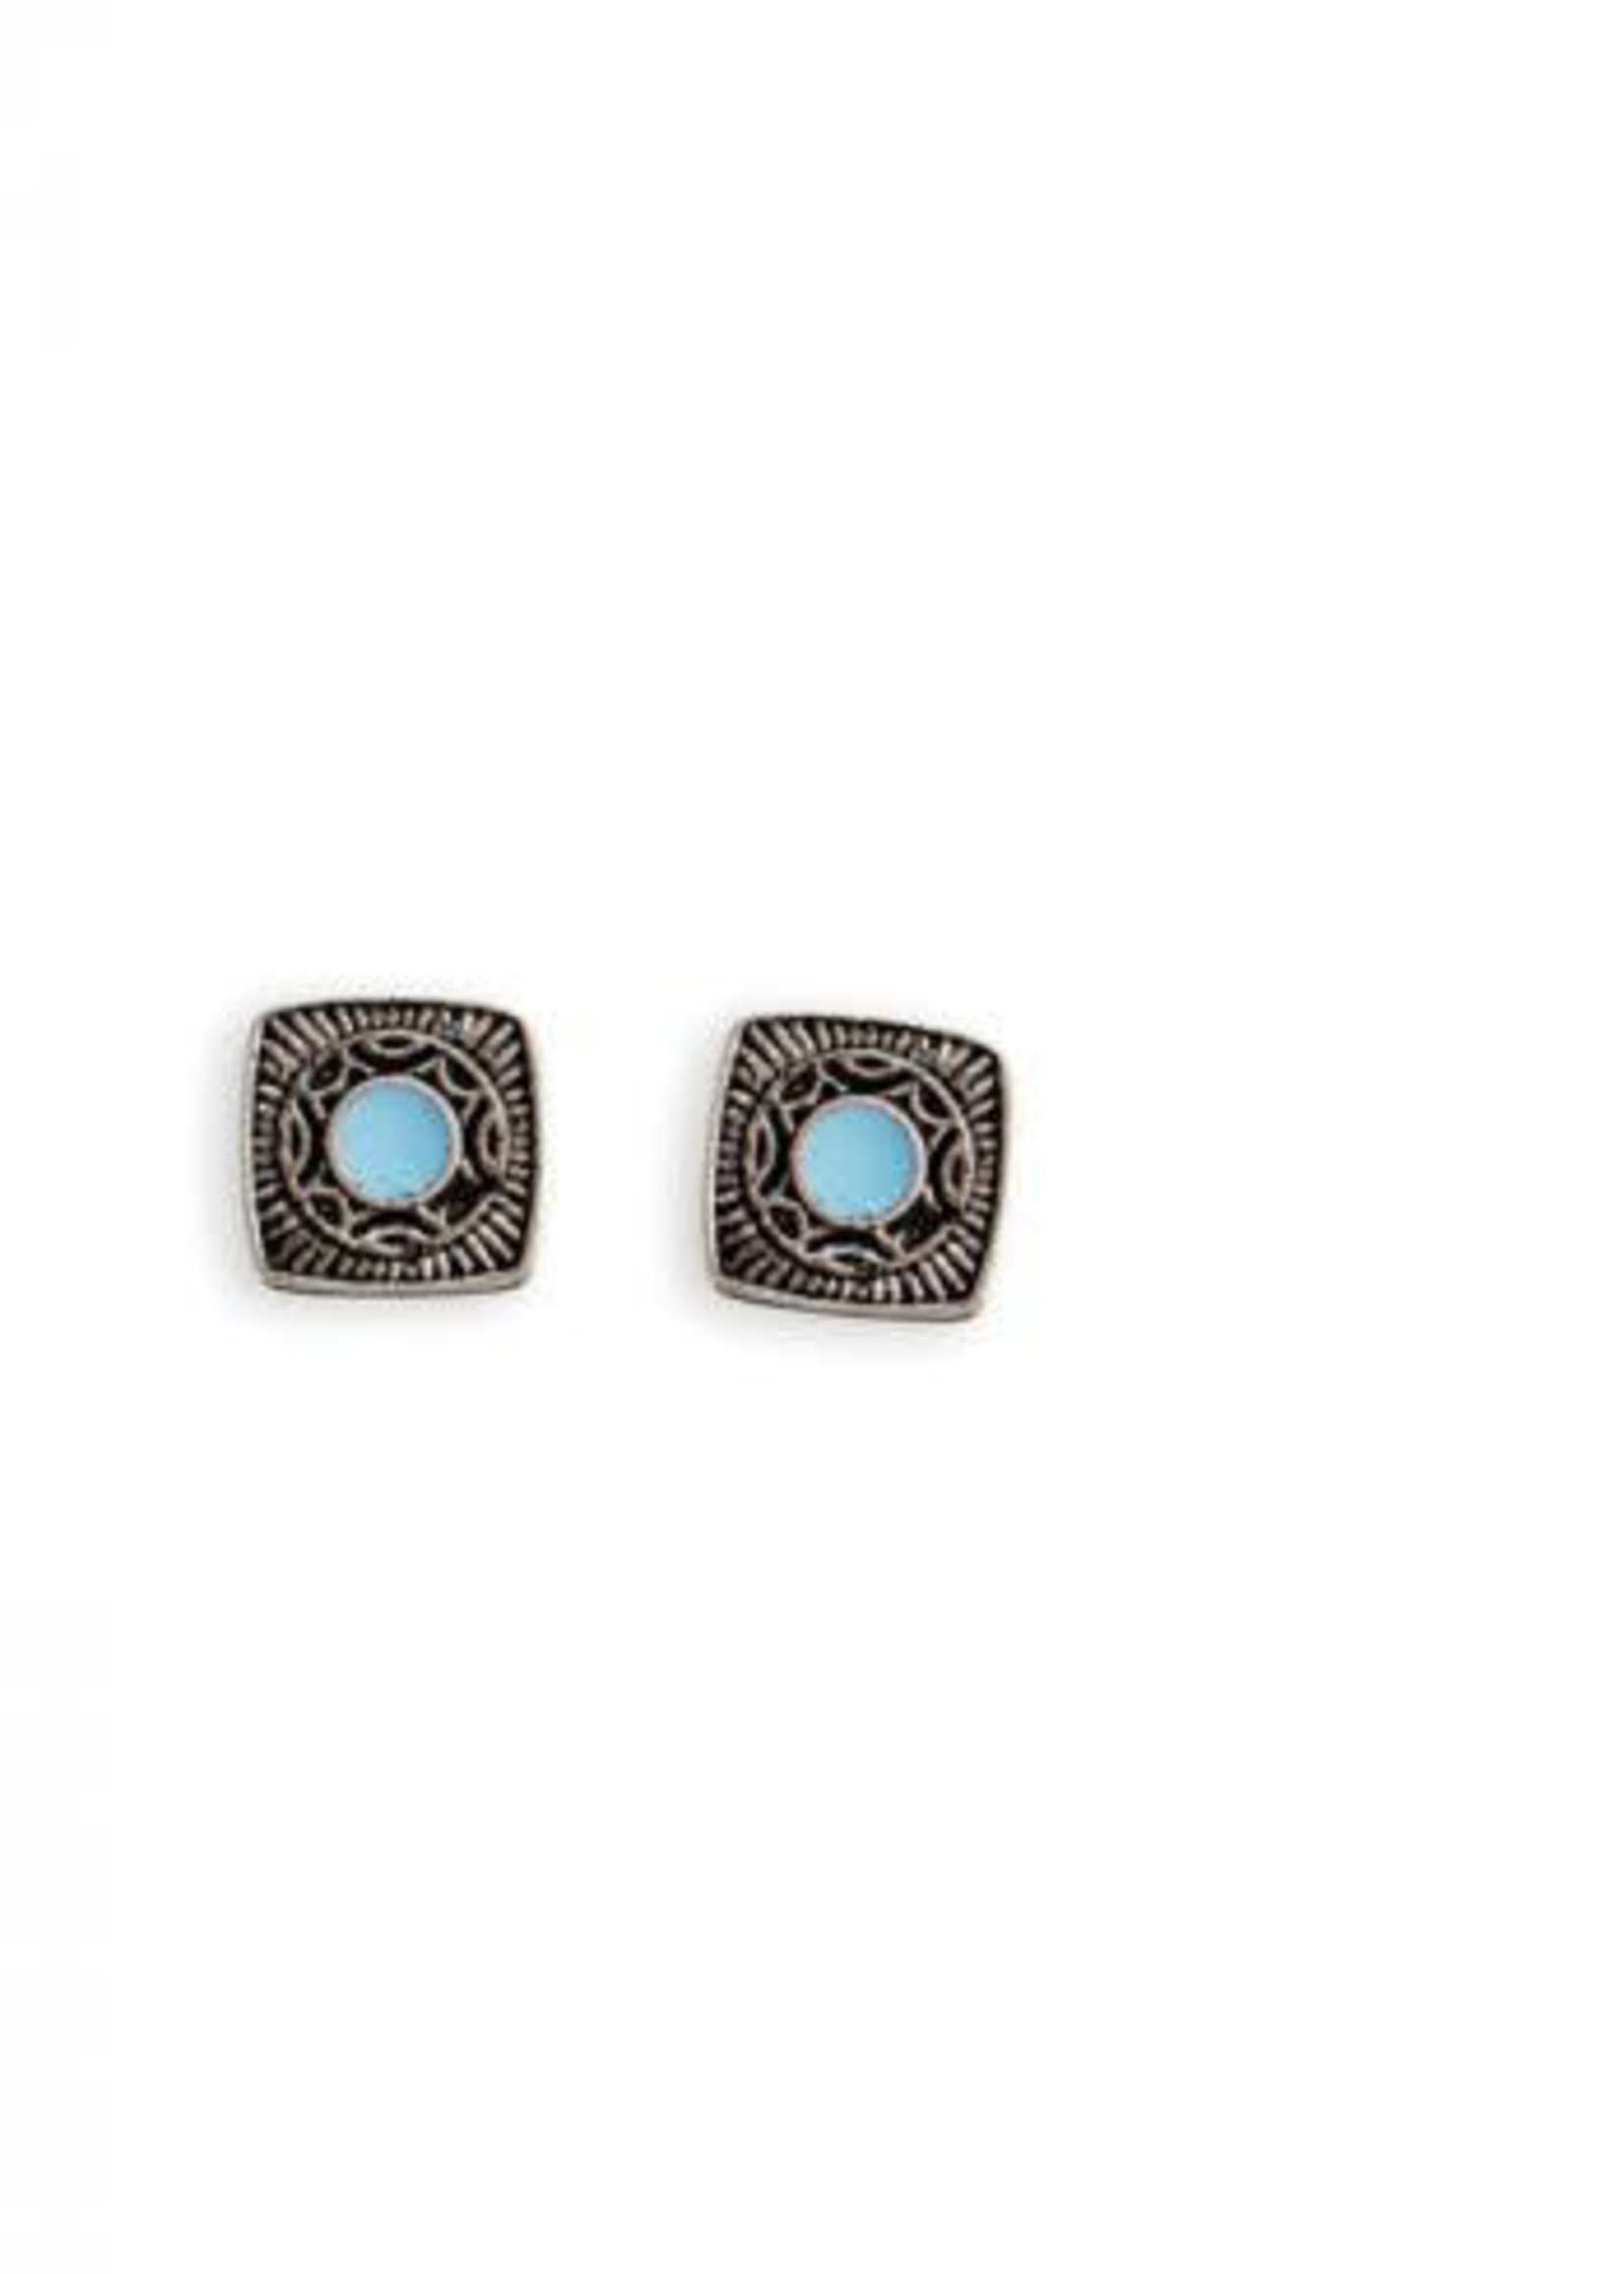 Bliing Square w/ Blue Earrings